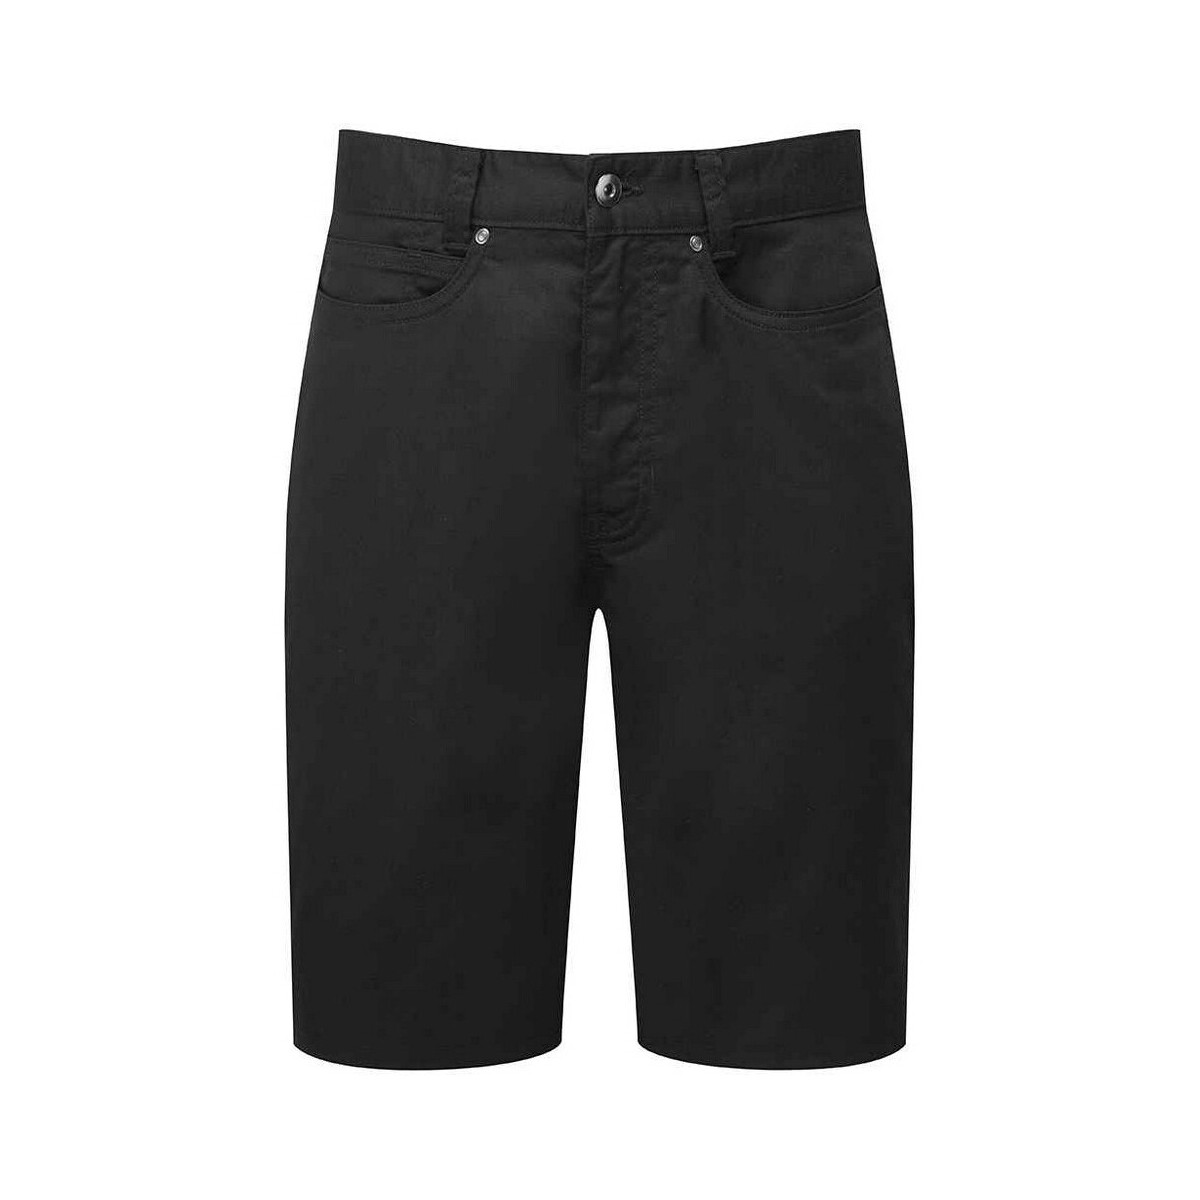 textil Hombre Shorts / Bermudas Premier Performance Negro